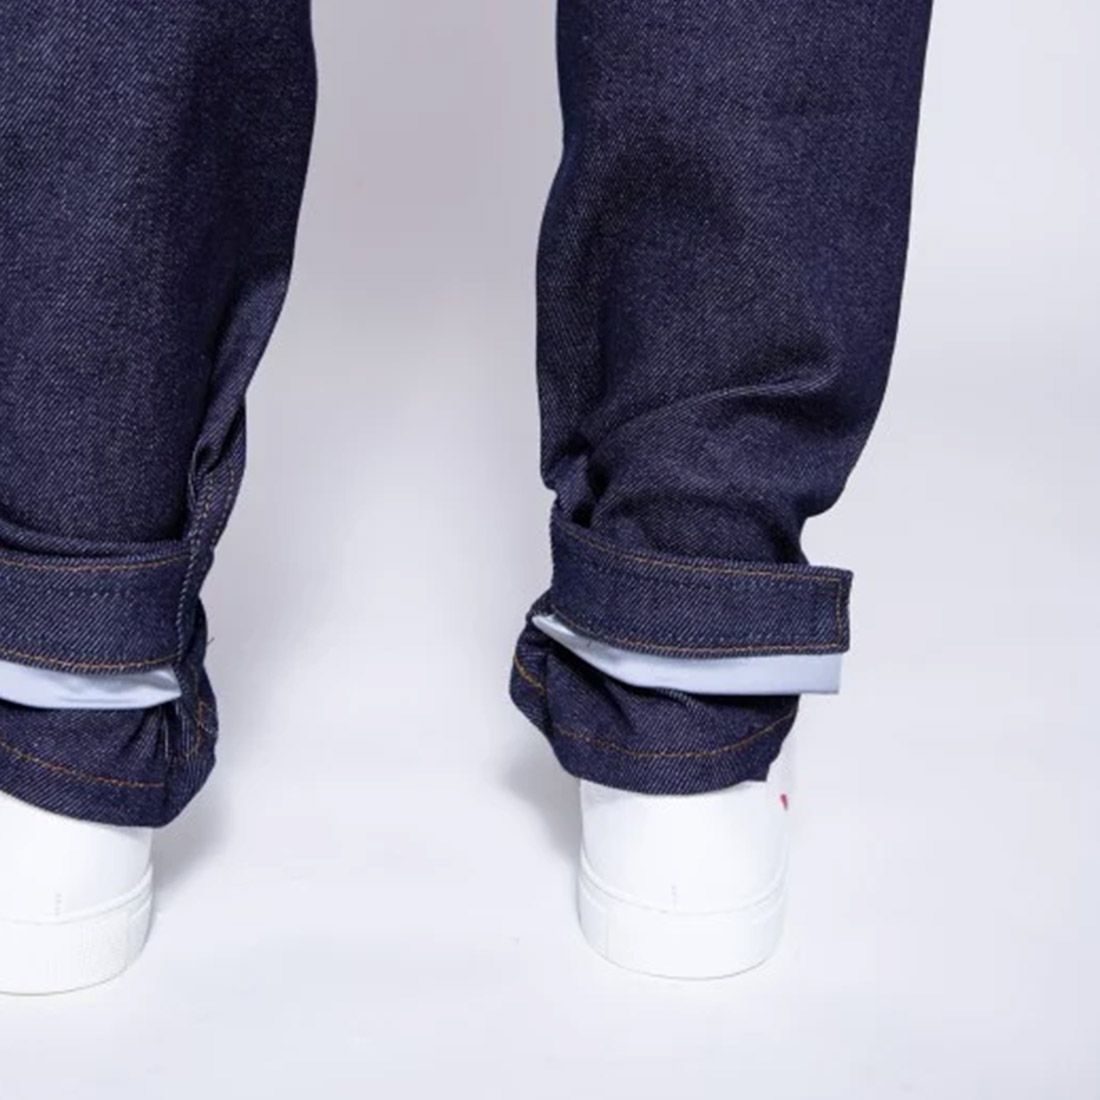 VELOTAF 103 - Men's Slim Fit Jeans 1083